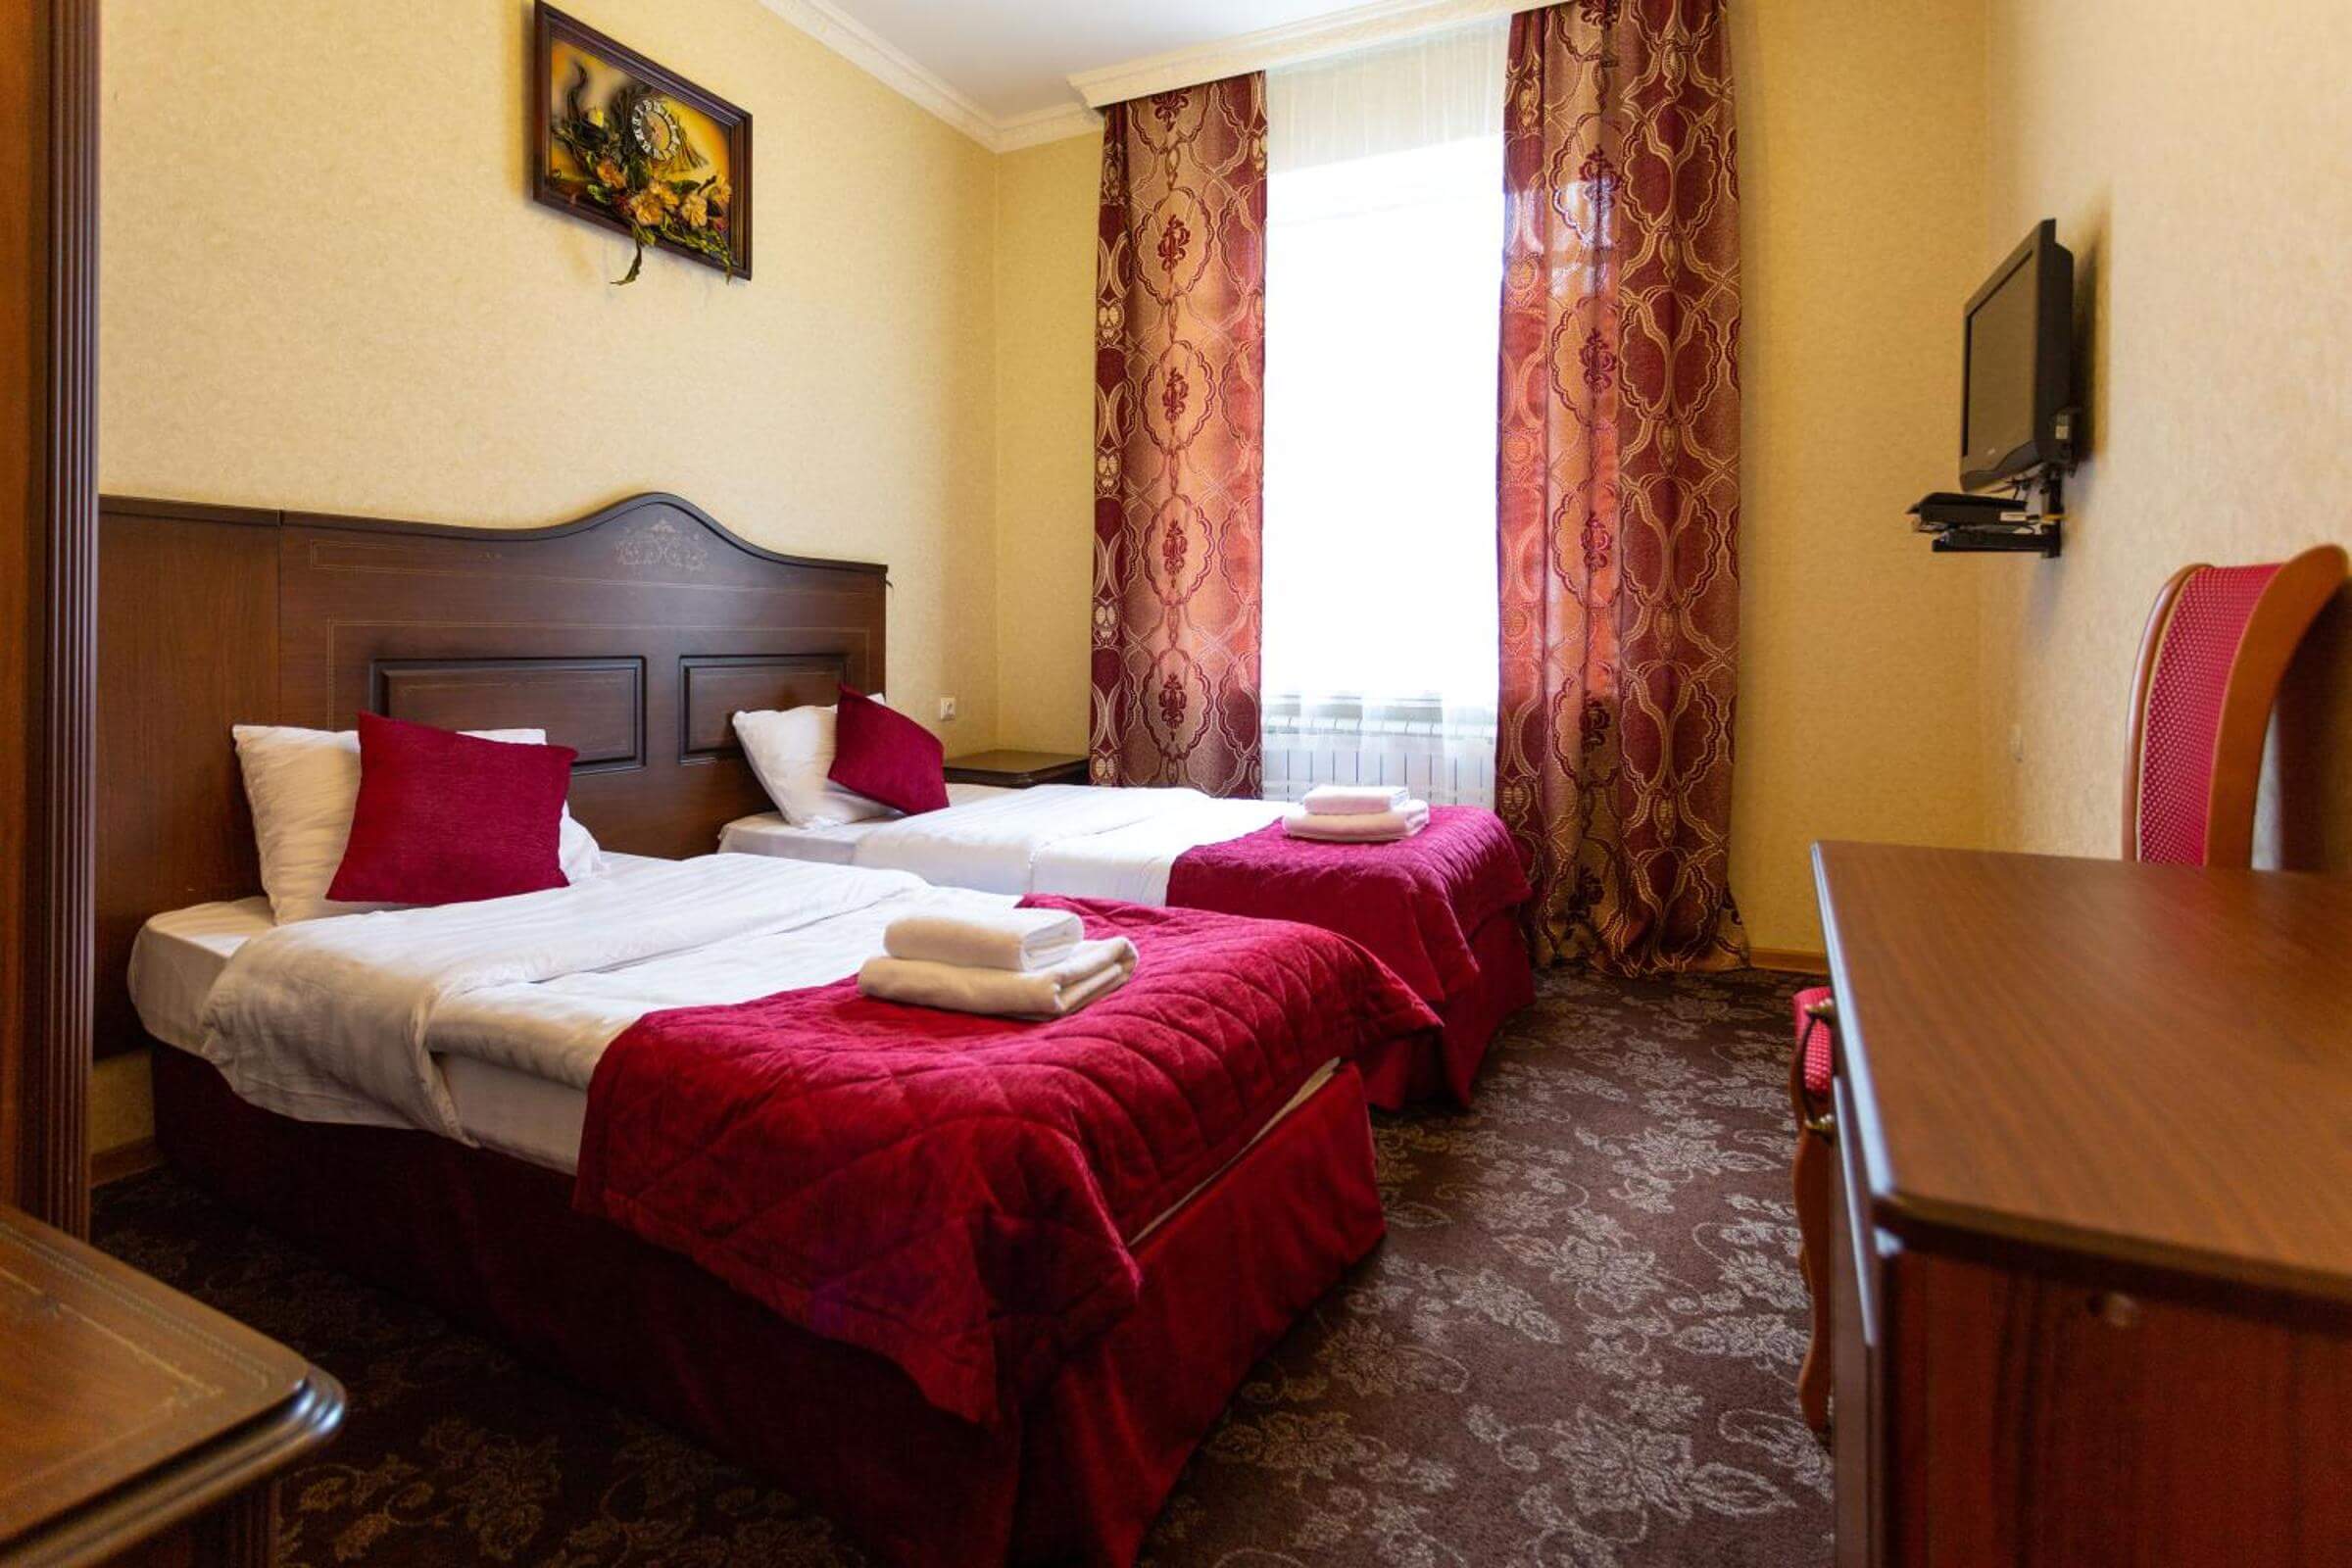 Пример гостиничного номера с двумя отдельными кроватями.